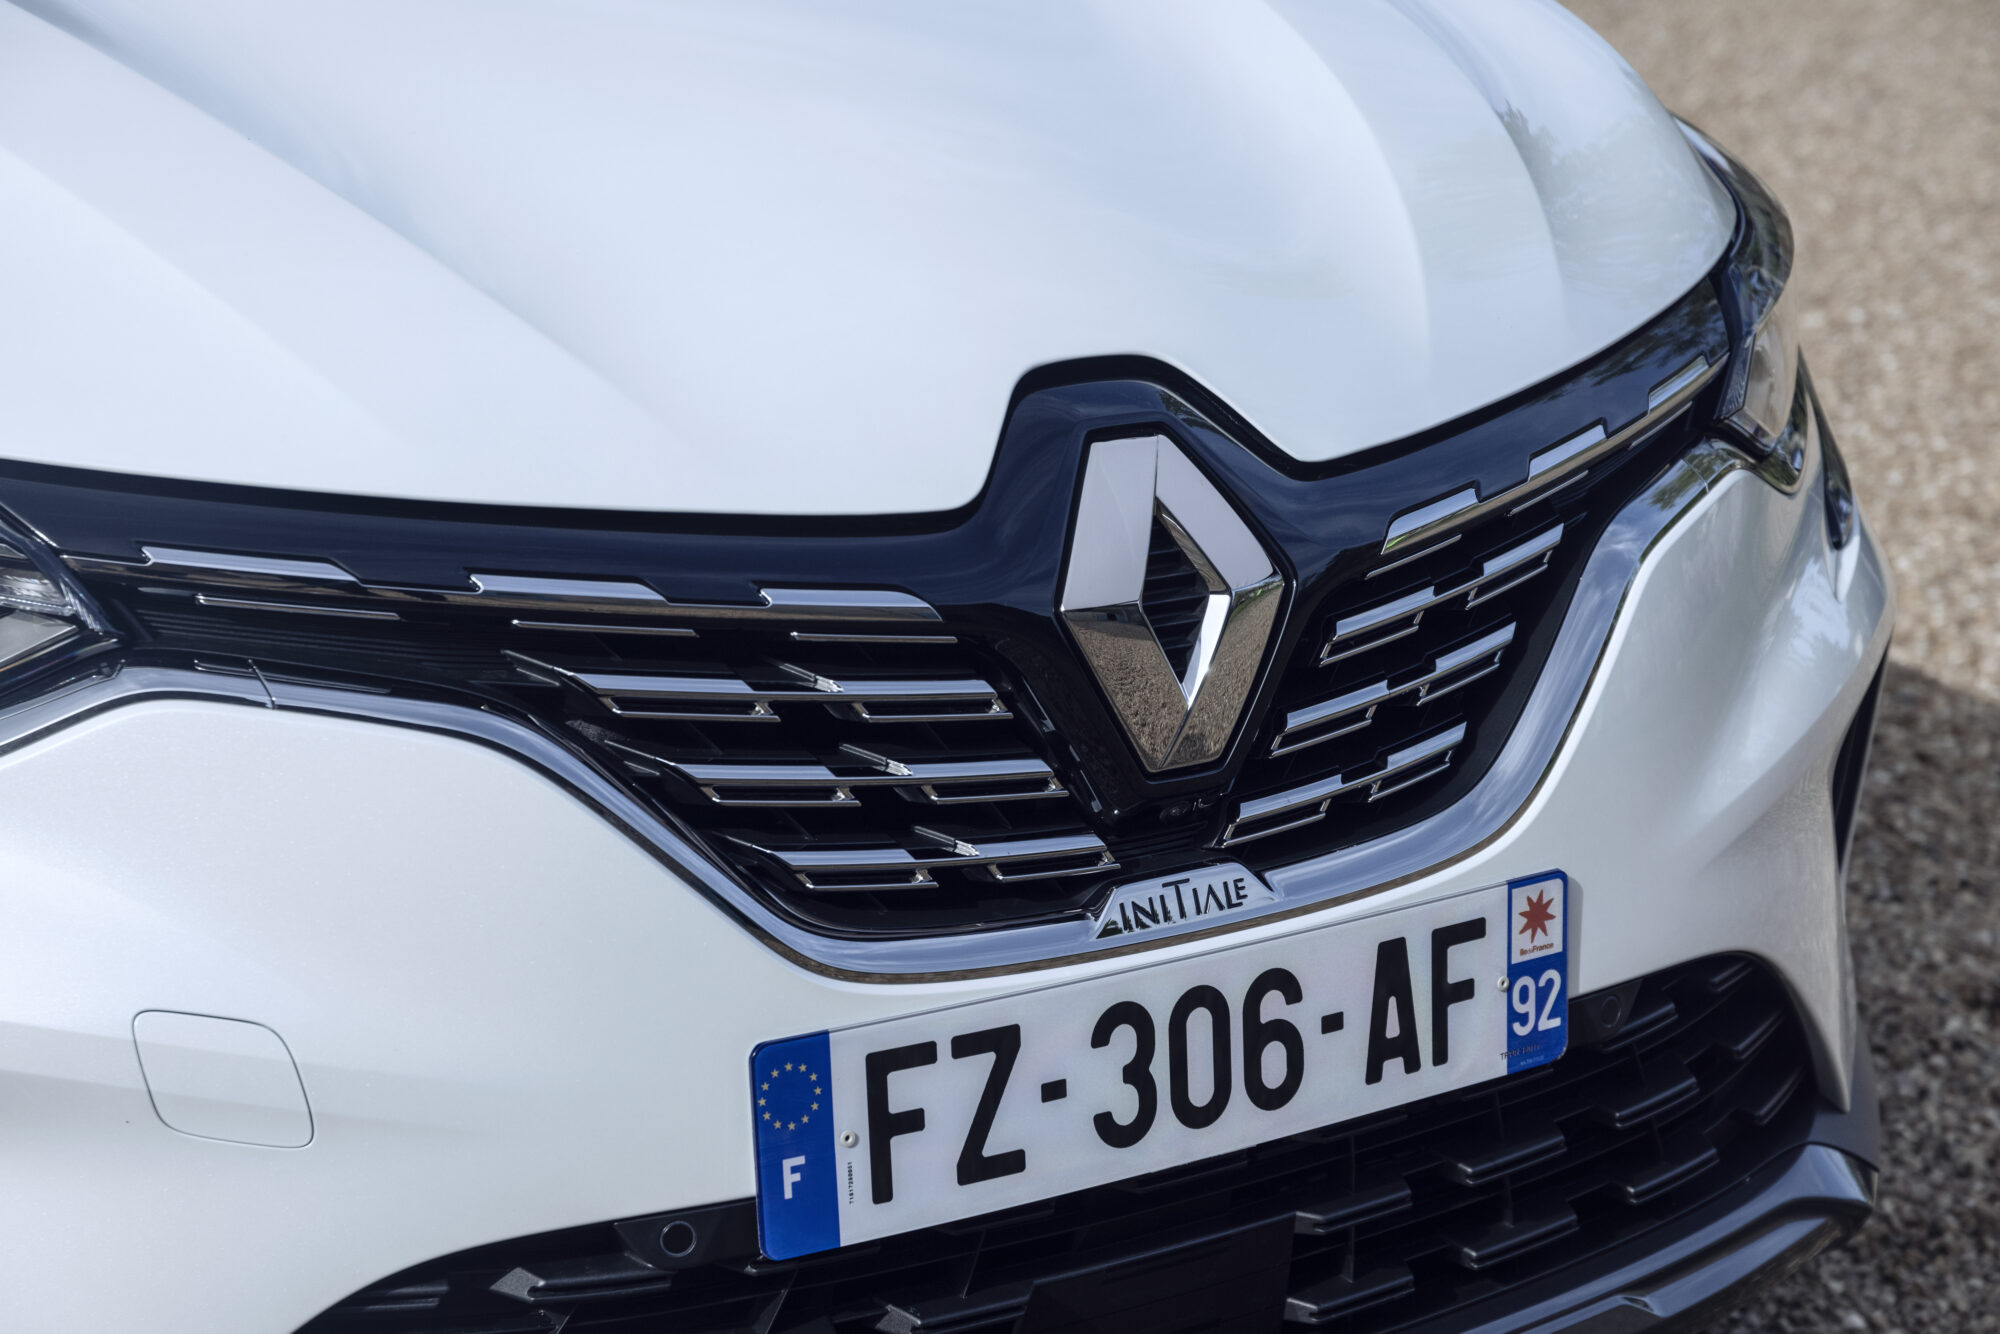 2021 - Essais presse Renault Captur E-TECH Hybrid - Version Initiale Paris